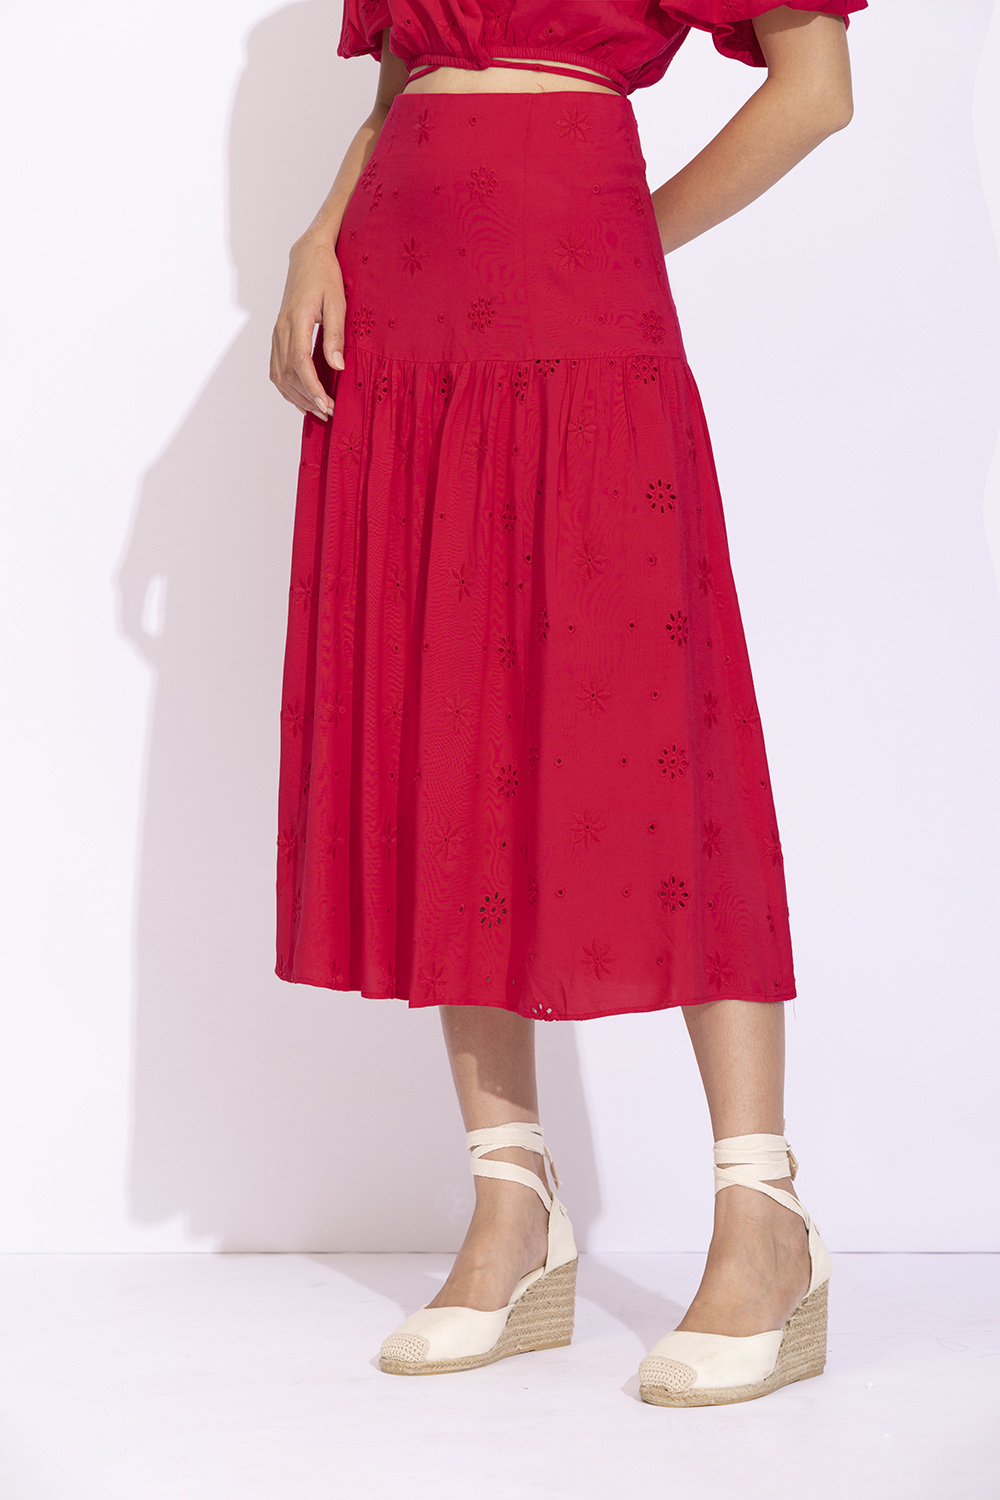 Chân váy xòe dài màu hồng lưng cao CV0523  Thời trang công sở KK Fashion